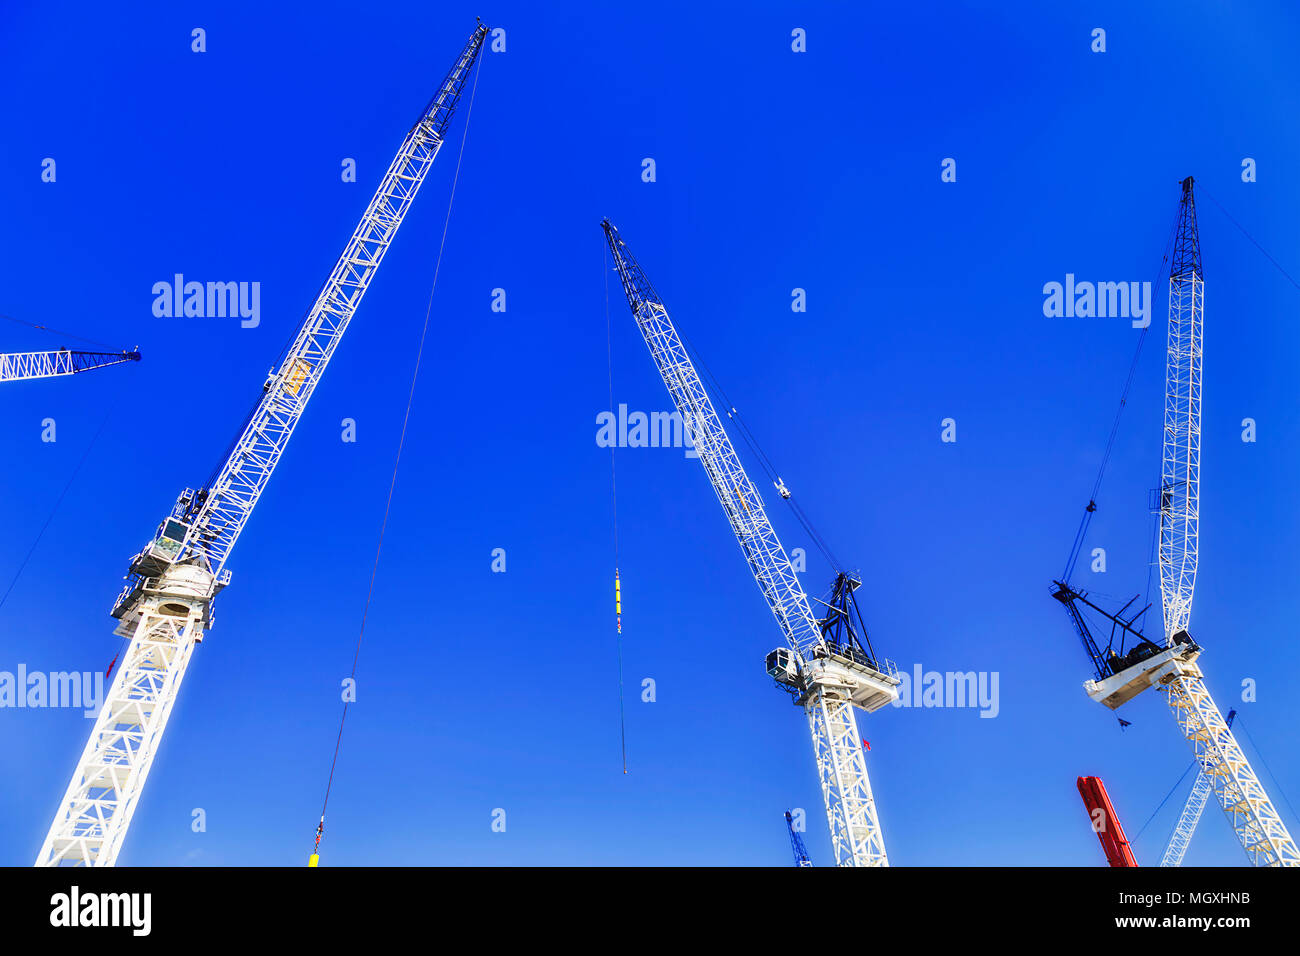 L'économie de construction traditionnelle avec de nombreuses grues de construction au chantier en Australie contre ciel bleu clair à l'état du marché à forte croissance Banque D'Images